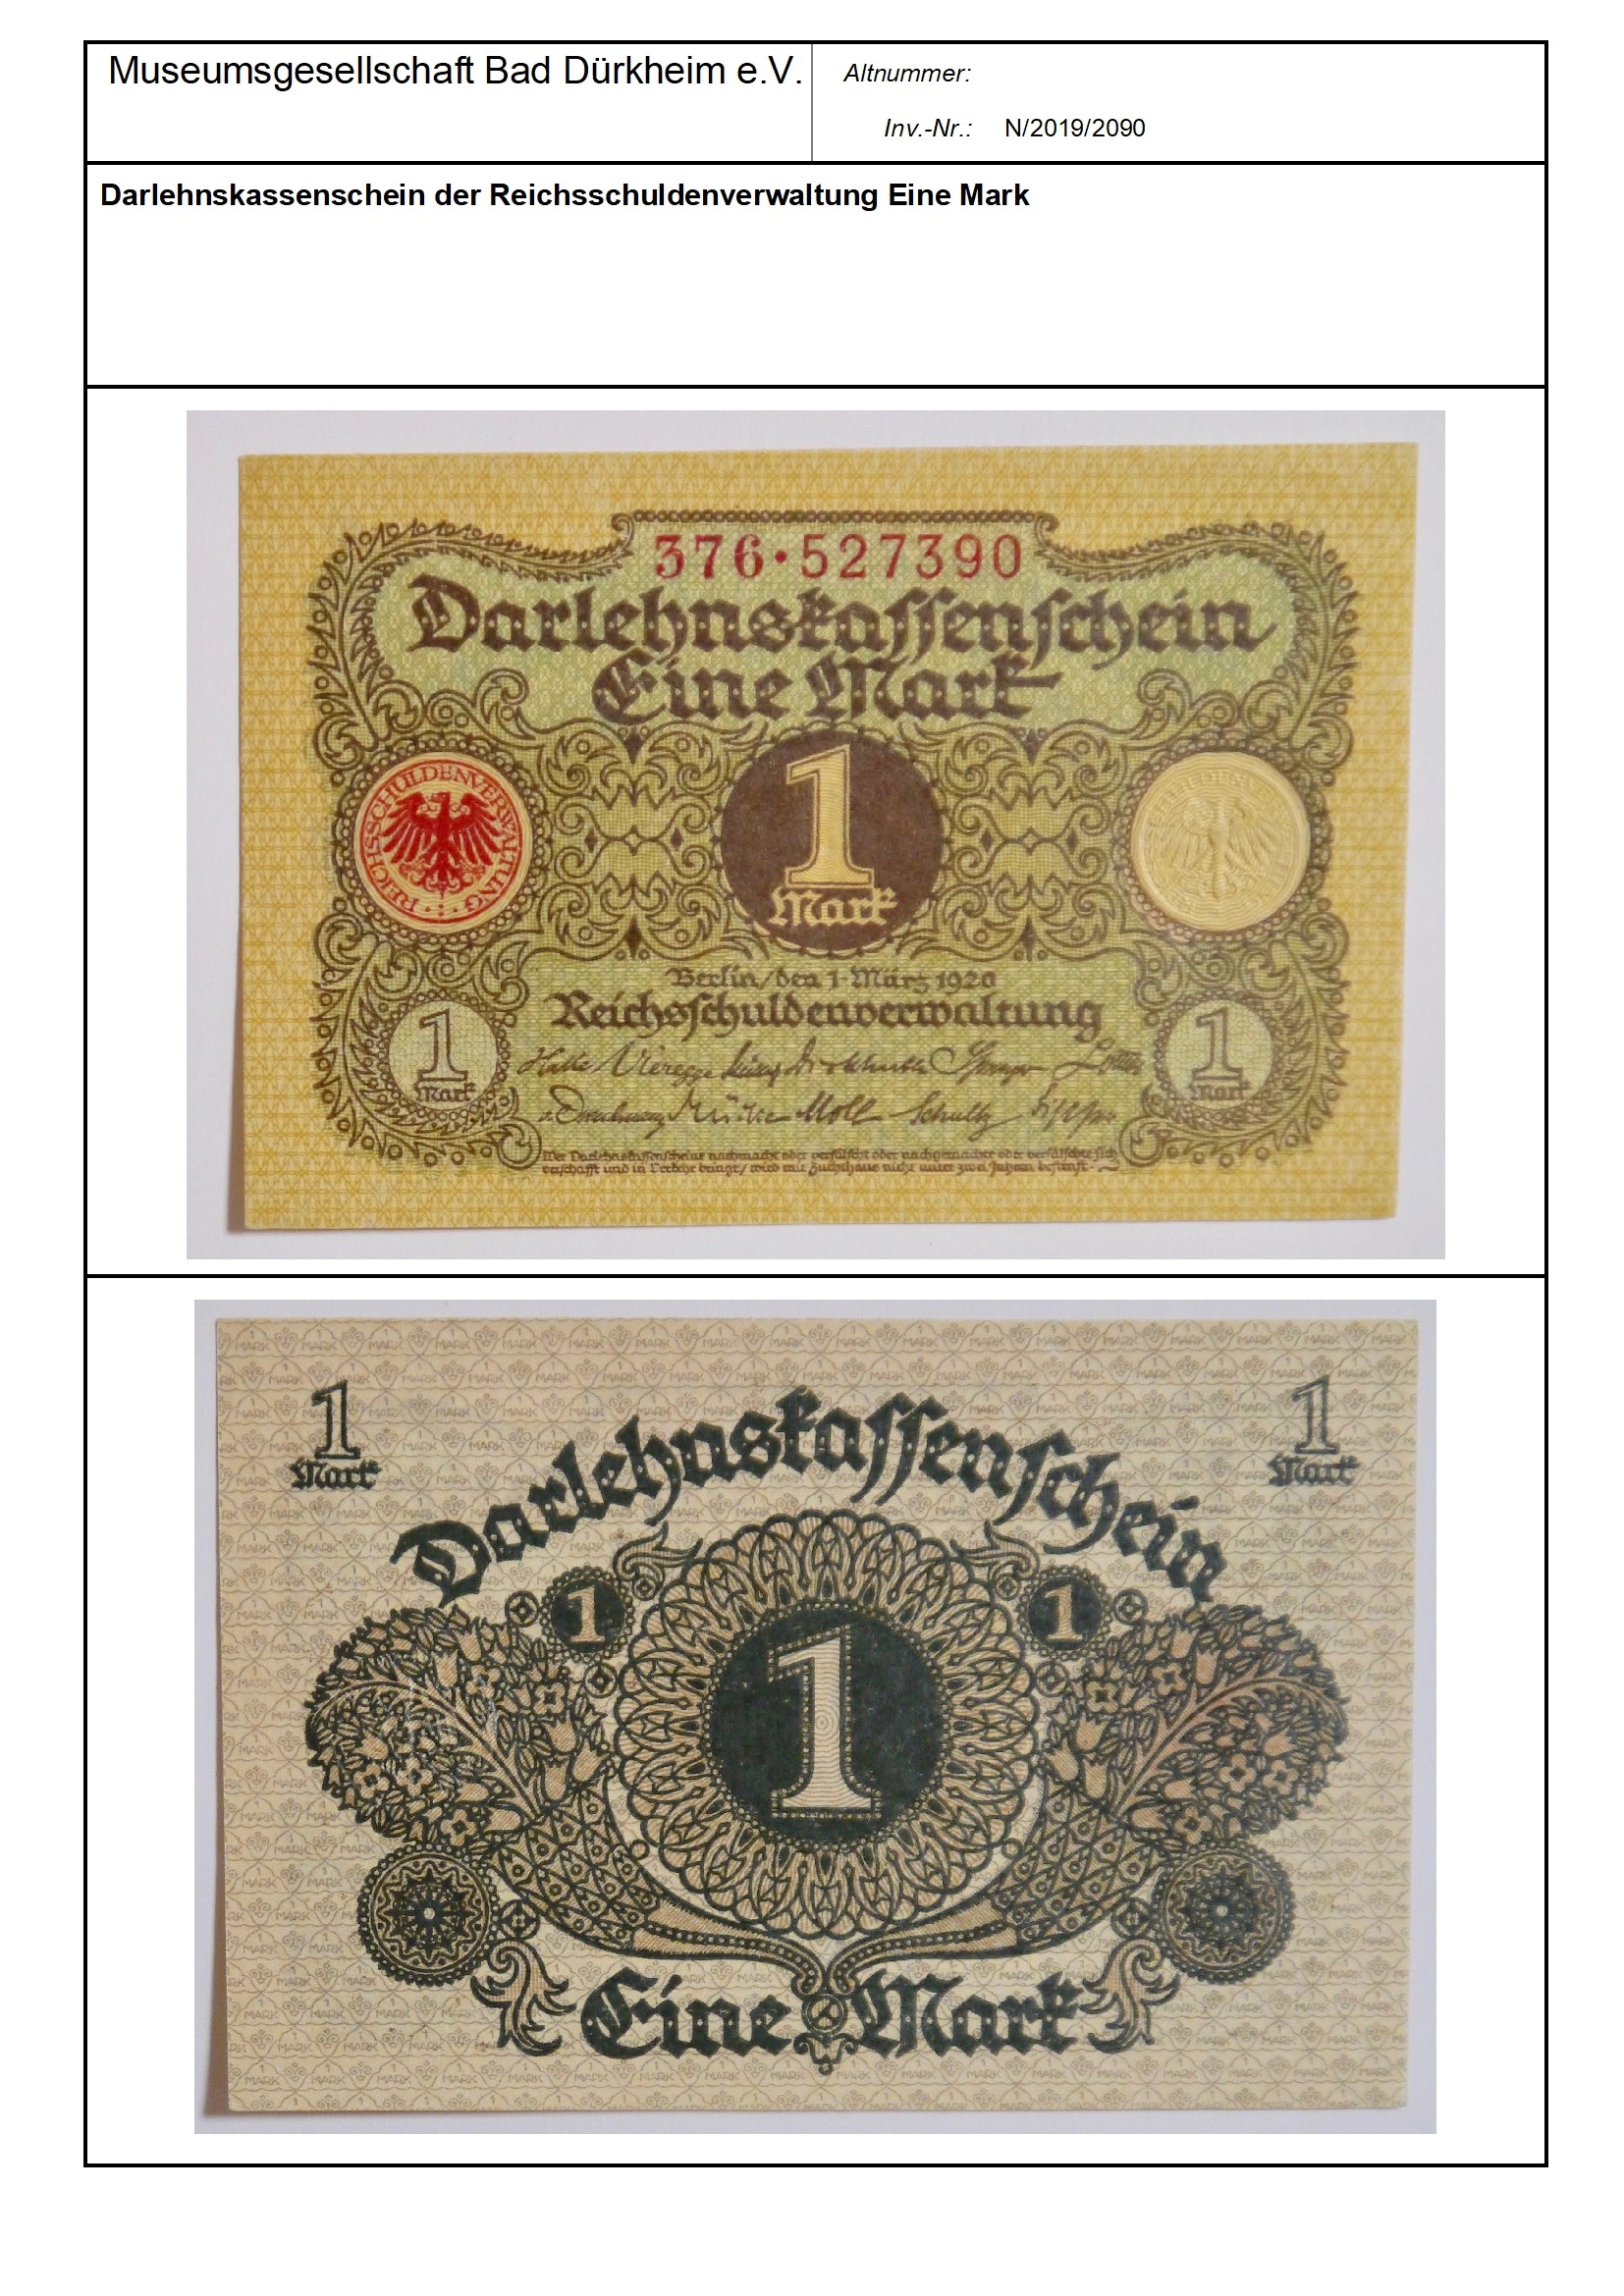 Darlehnskassenschein der Reichsschuldenverwaltung Eine Mark
Serien-Nummer: 376*527390 (Museumsgesellschaft Bad Dürkheim e.V. CC BY-NC-SA)